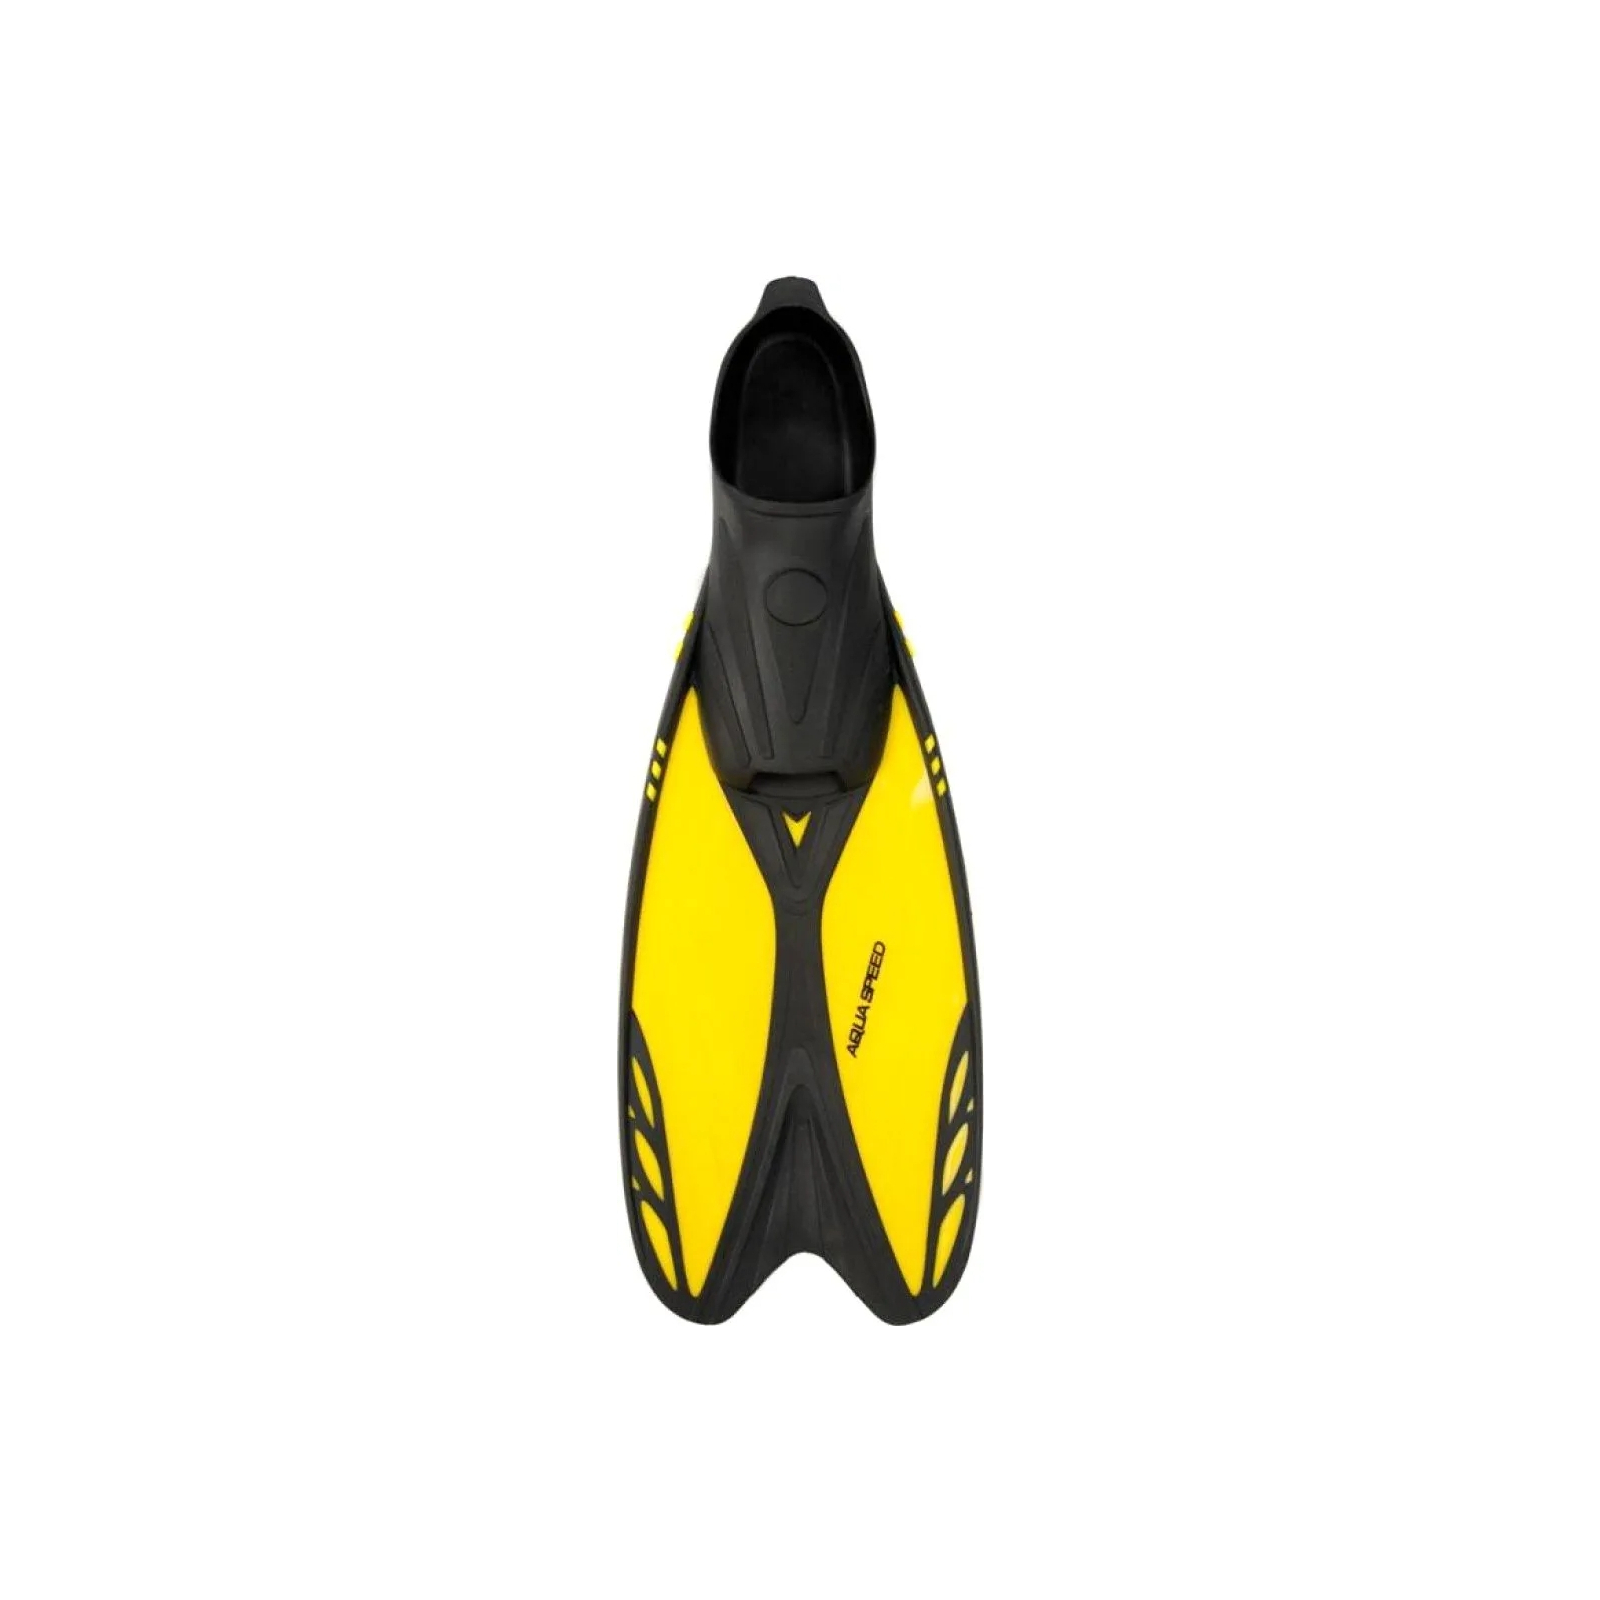 Ласты Aqua Speed Vapor 724-38 60274 жовтий, чорний 44-45 (5905718602742) изображение 2